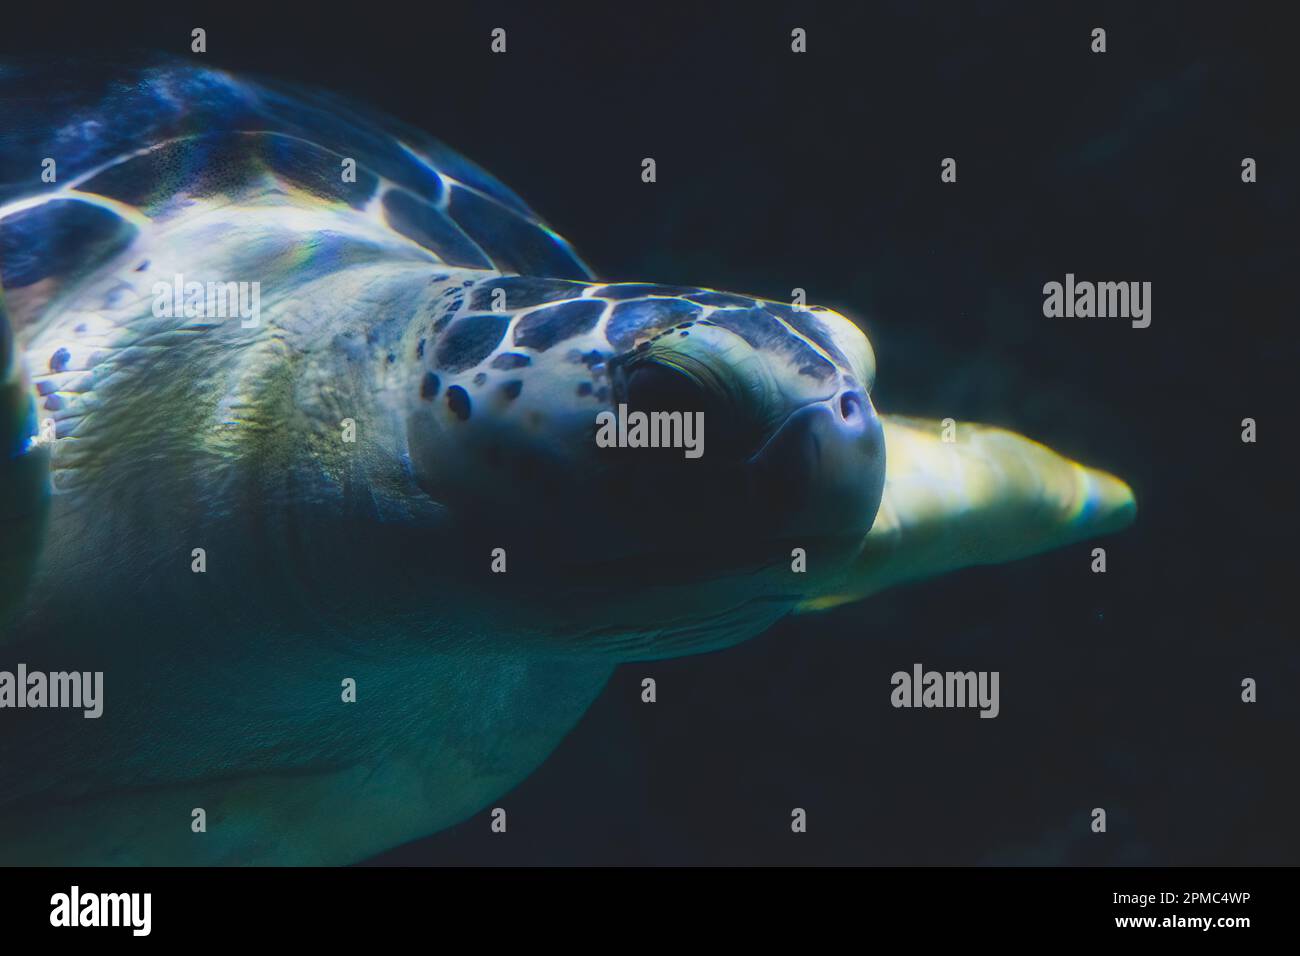 Une tortue de mer de Loggerhead, nageant dans l'immense aquarium. Banque D'Images